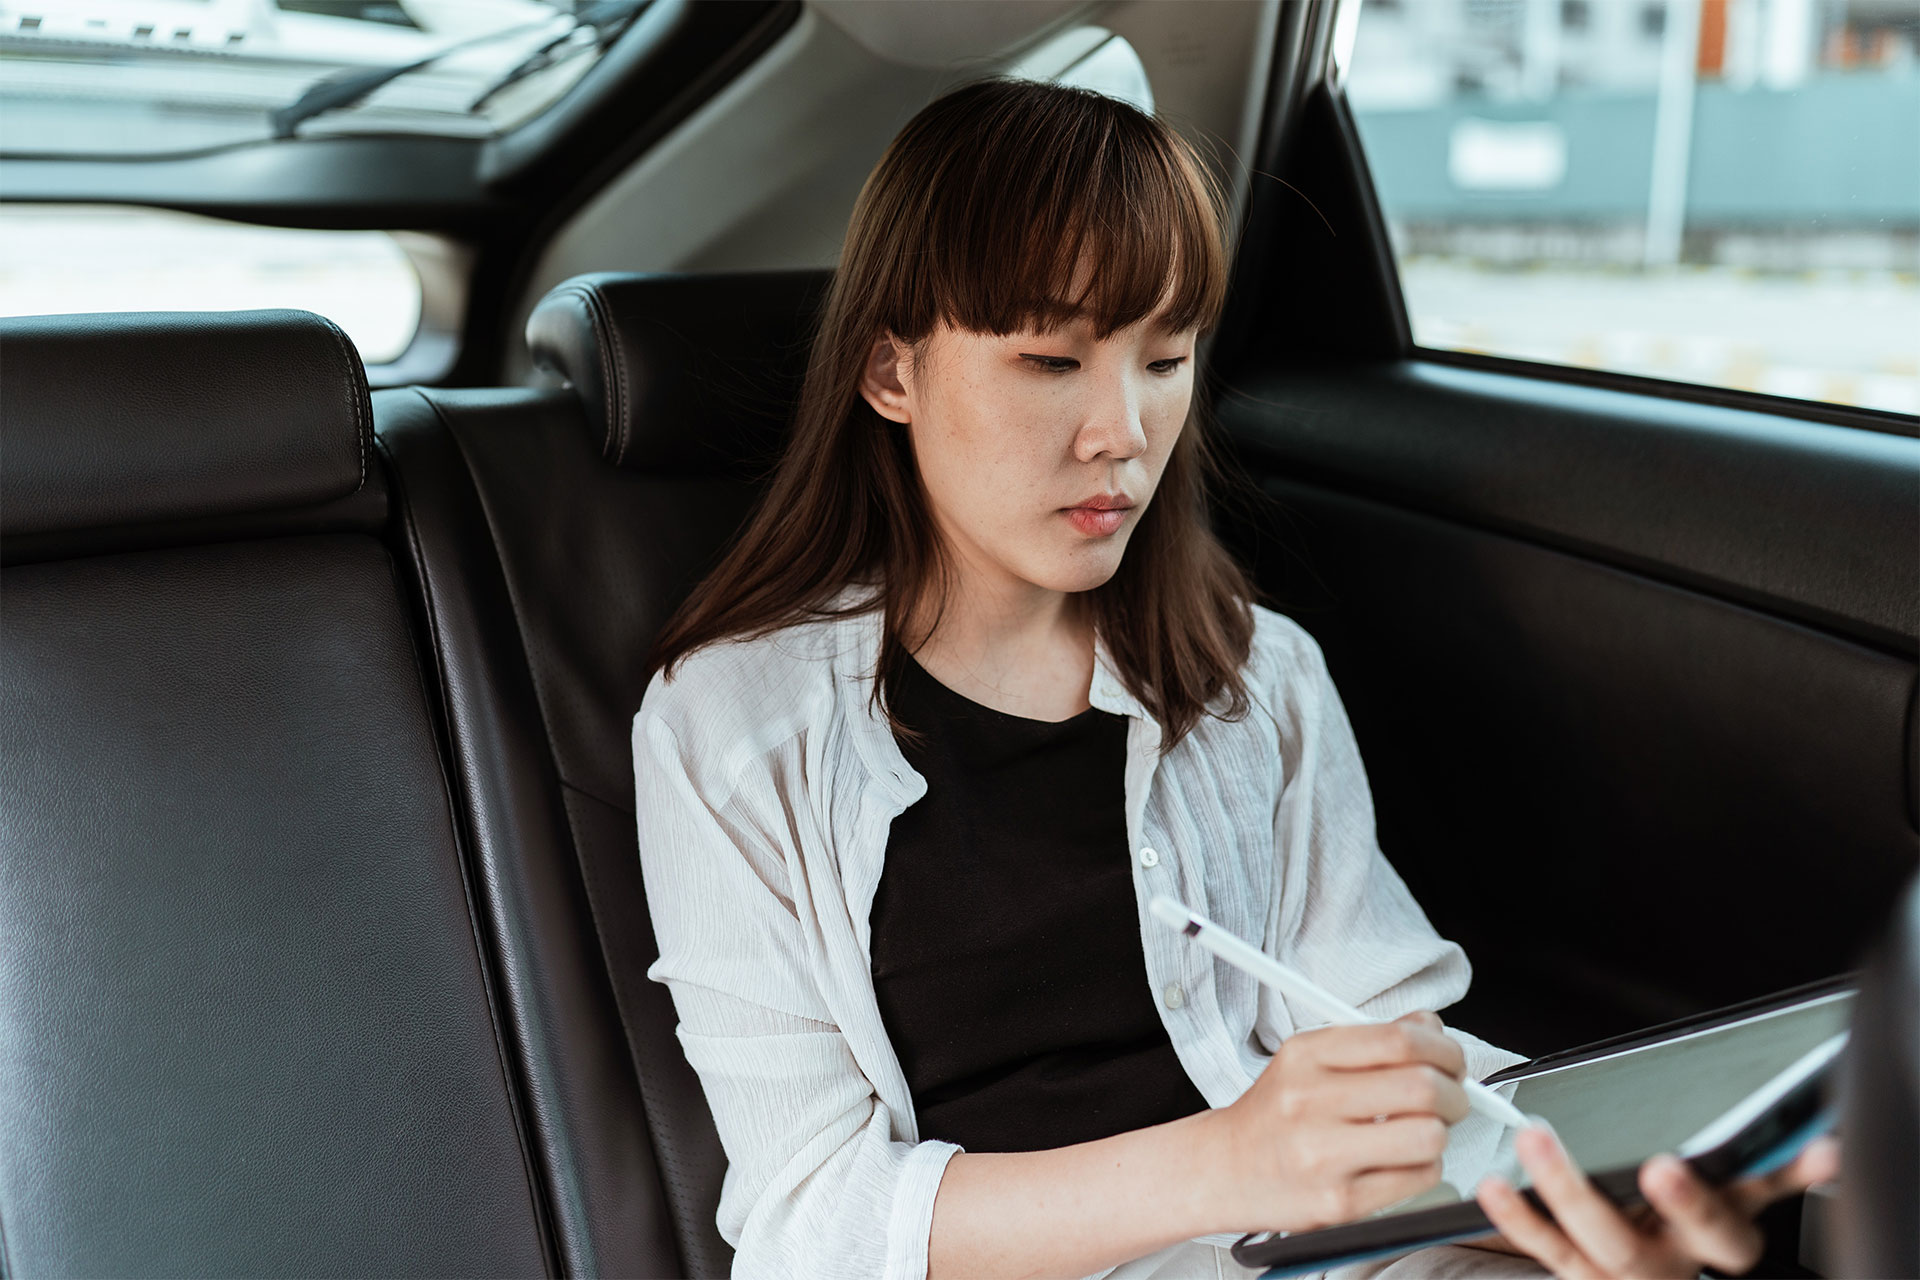 Femme assise dans une voiture et signant quelque chose sur une tablette